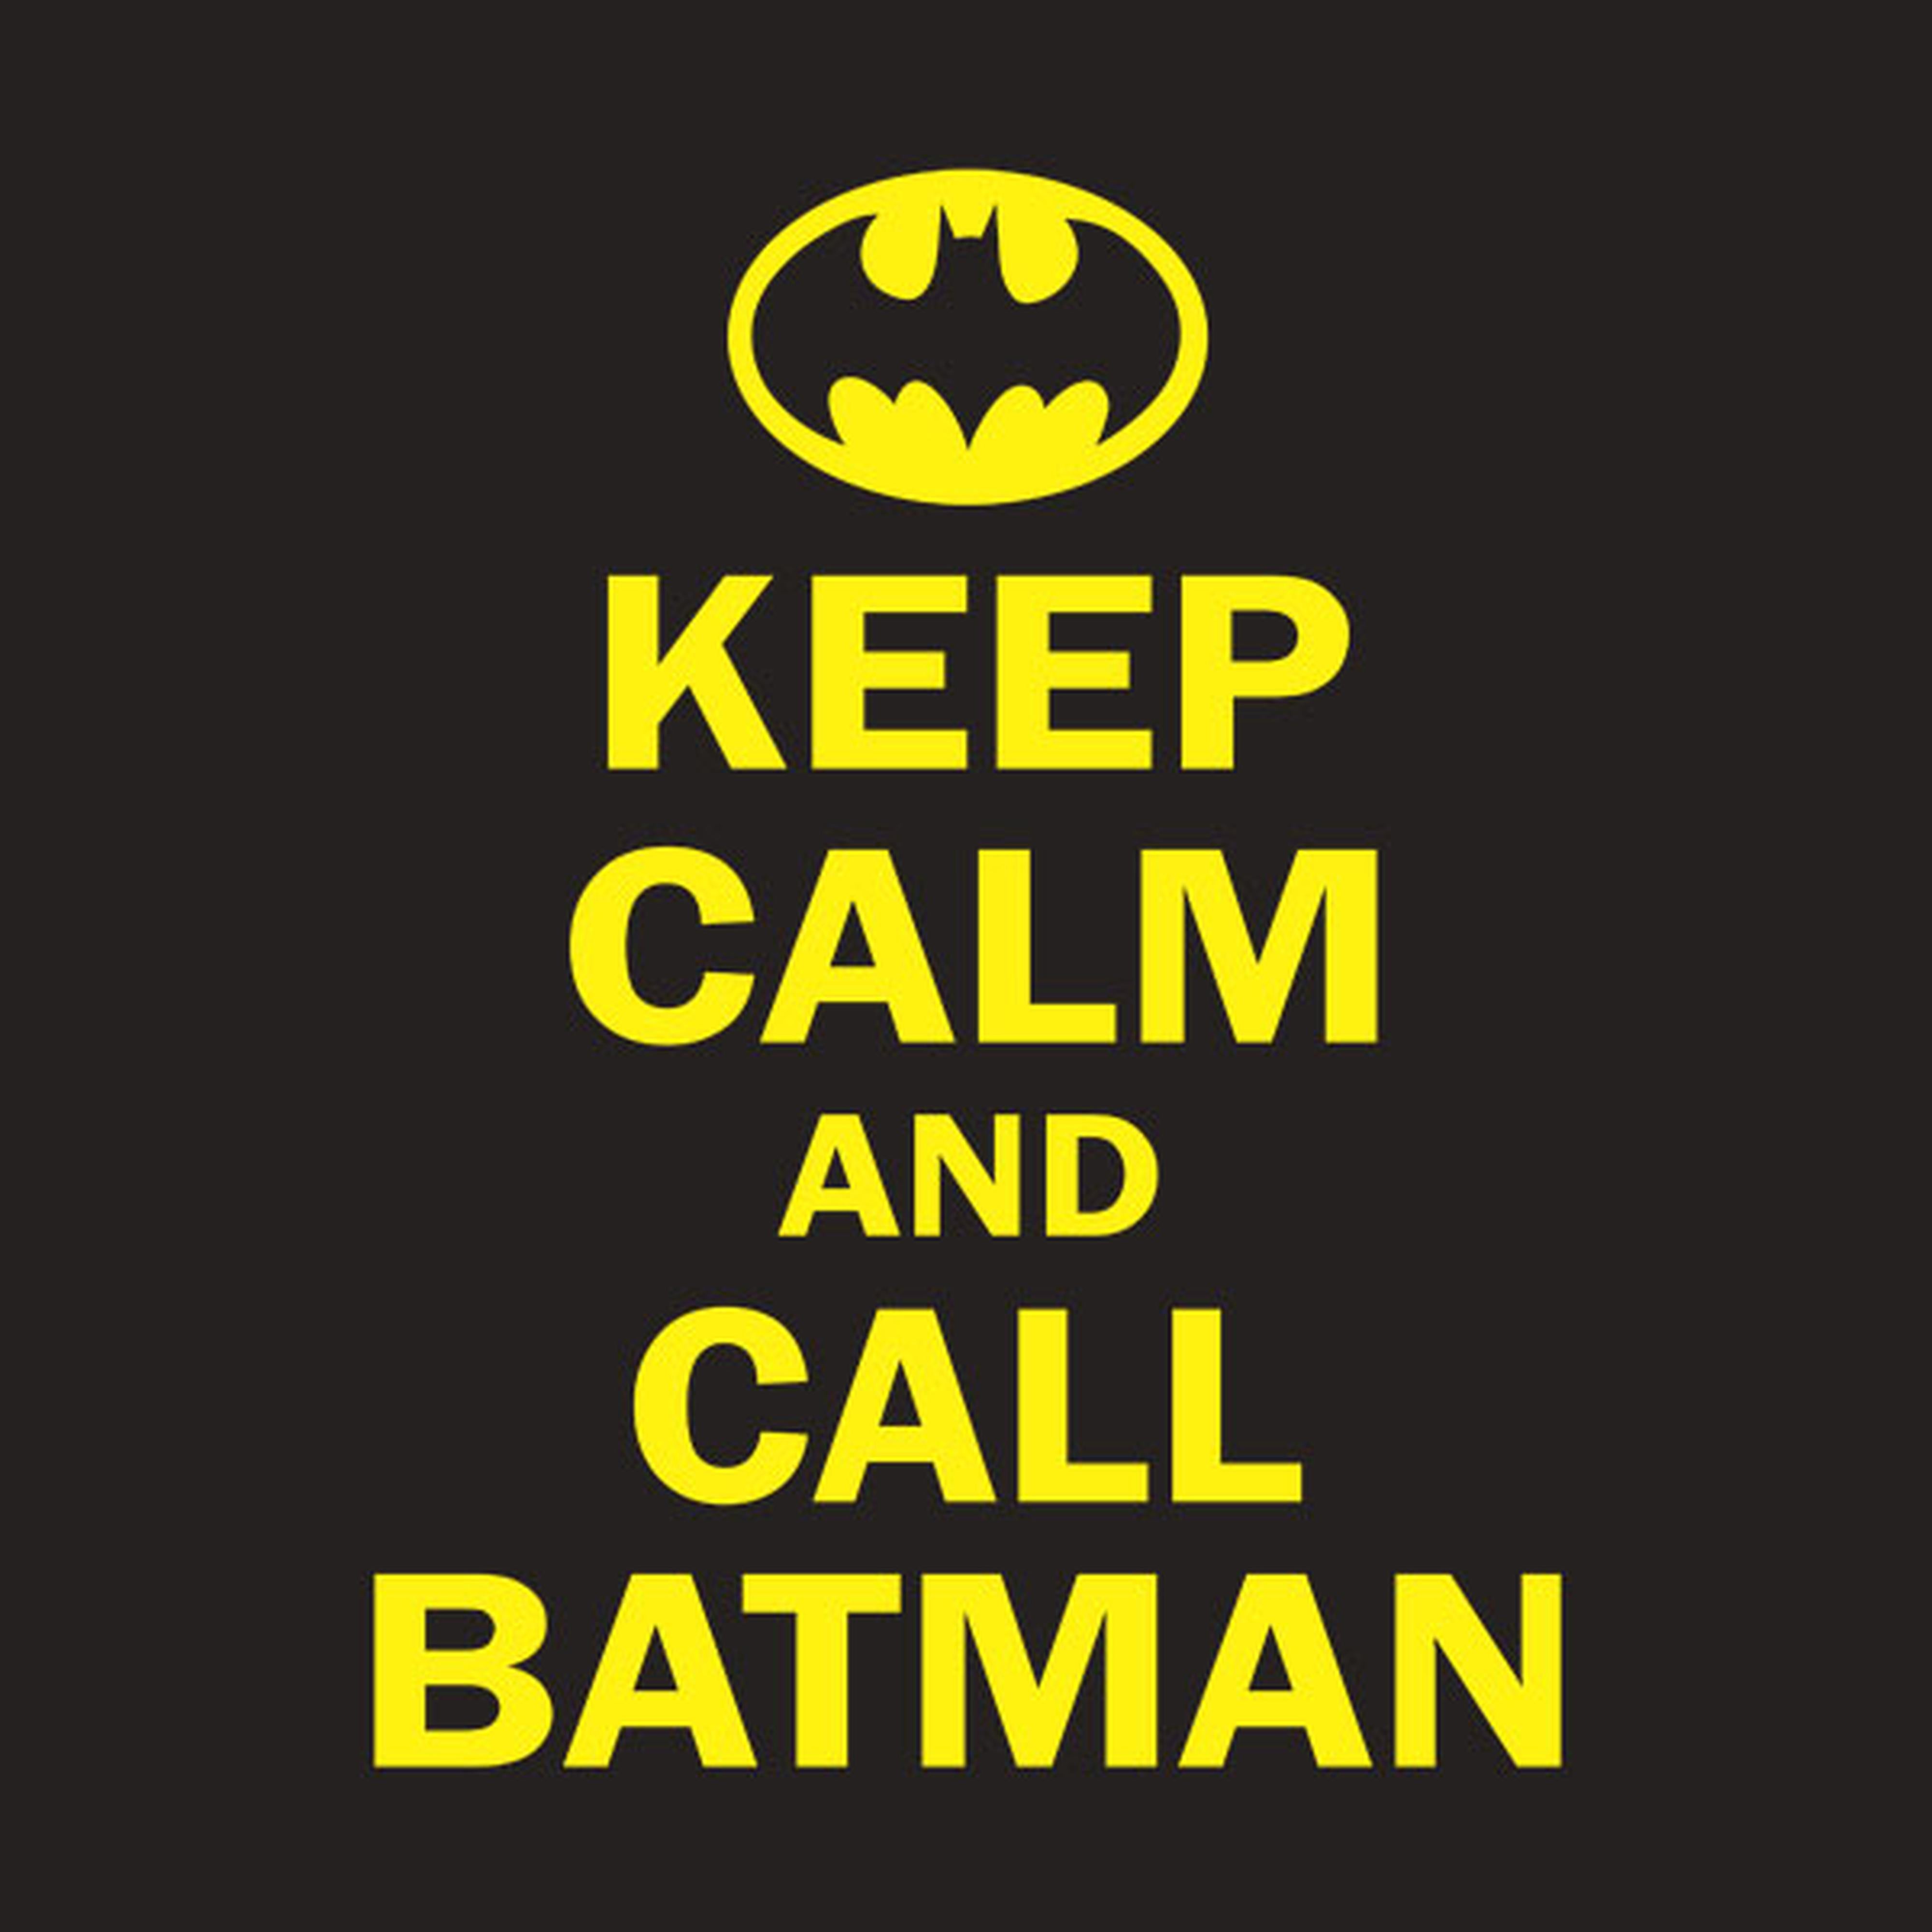 Keep calm and call Batman